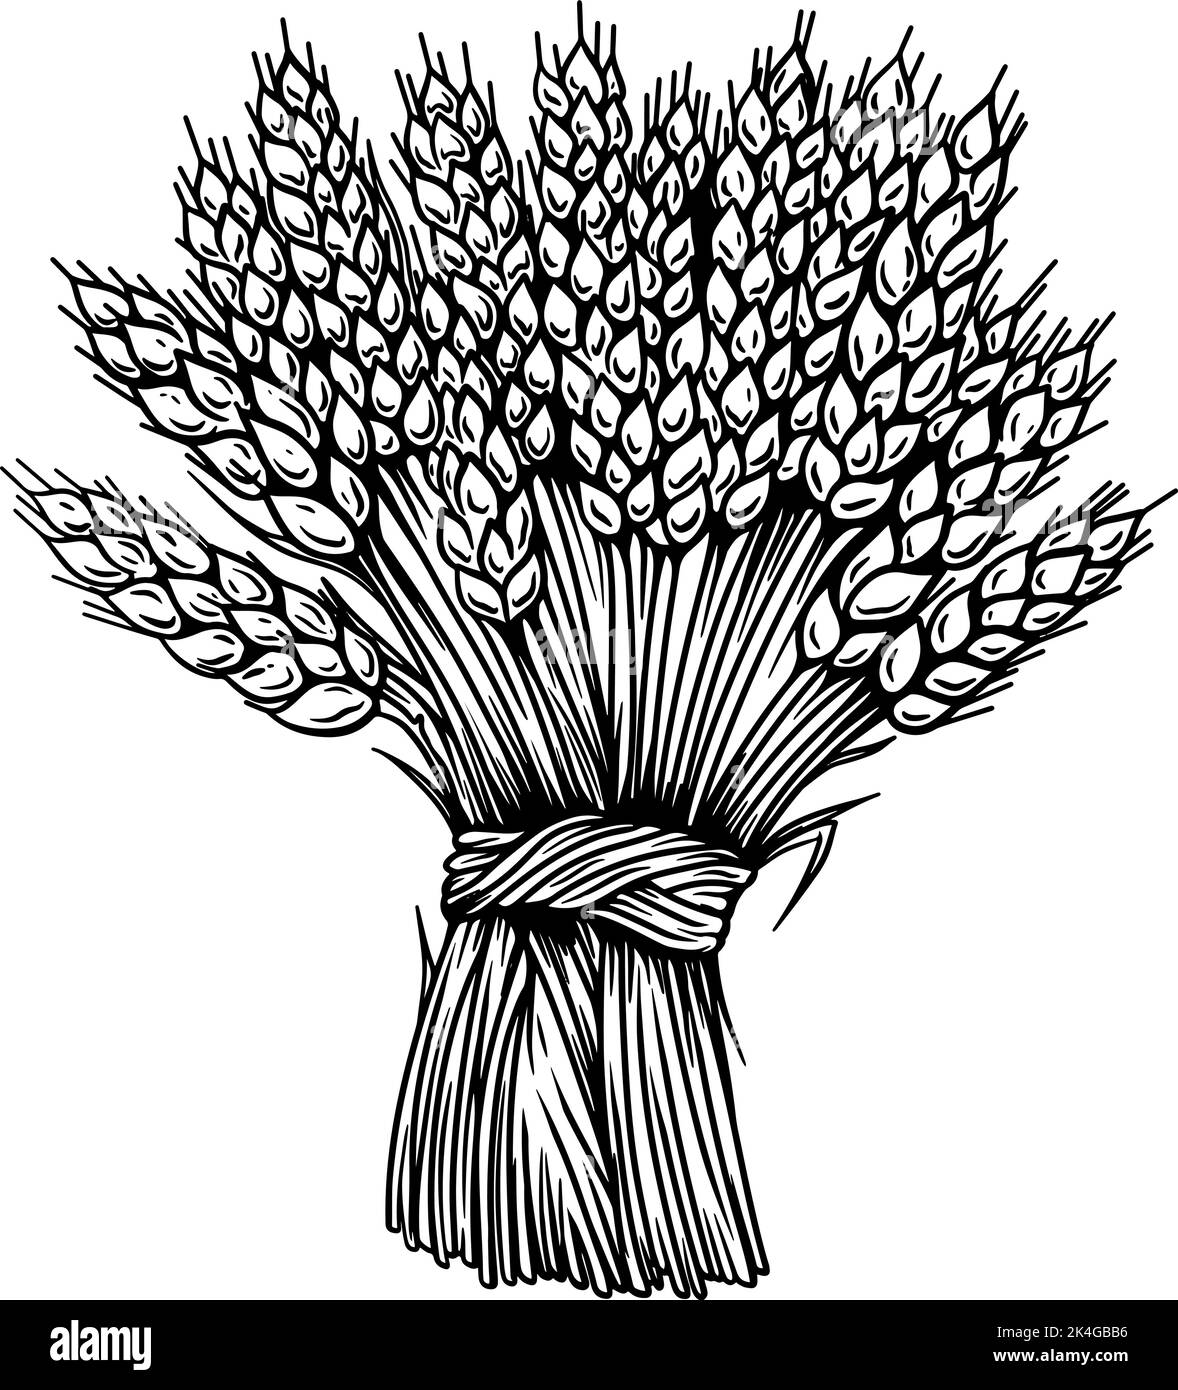 Illustrazione del taglio di grano in stile incisione. Elemento di design per emblema, insegna, poster, design della confezione. Illustrazione vettoriale Illustrazione Vettoriale